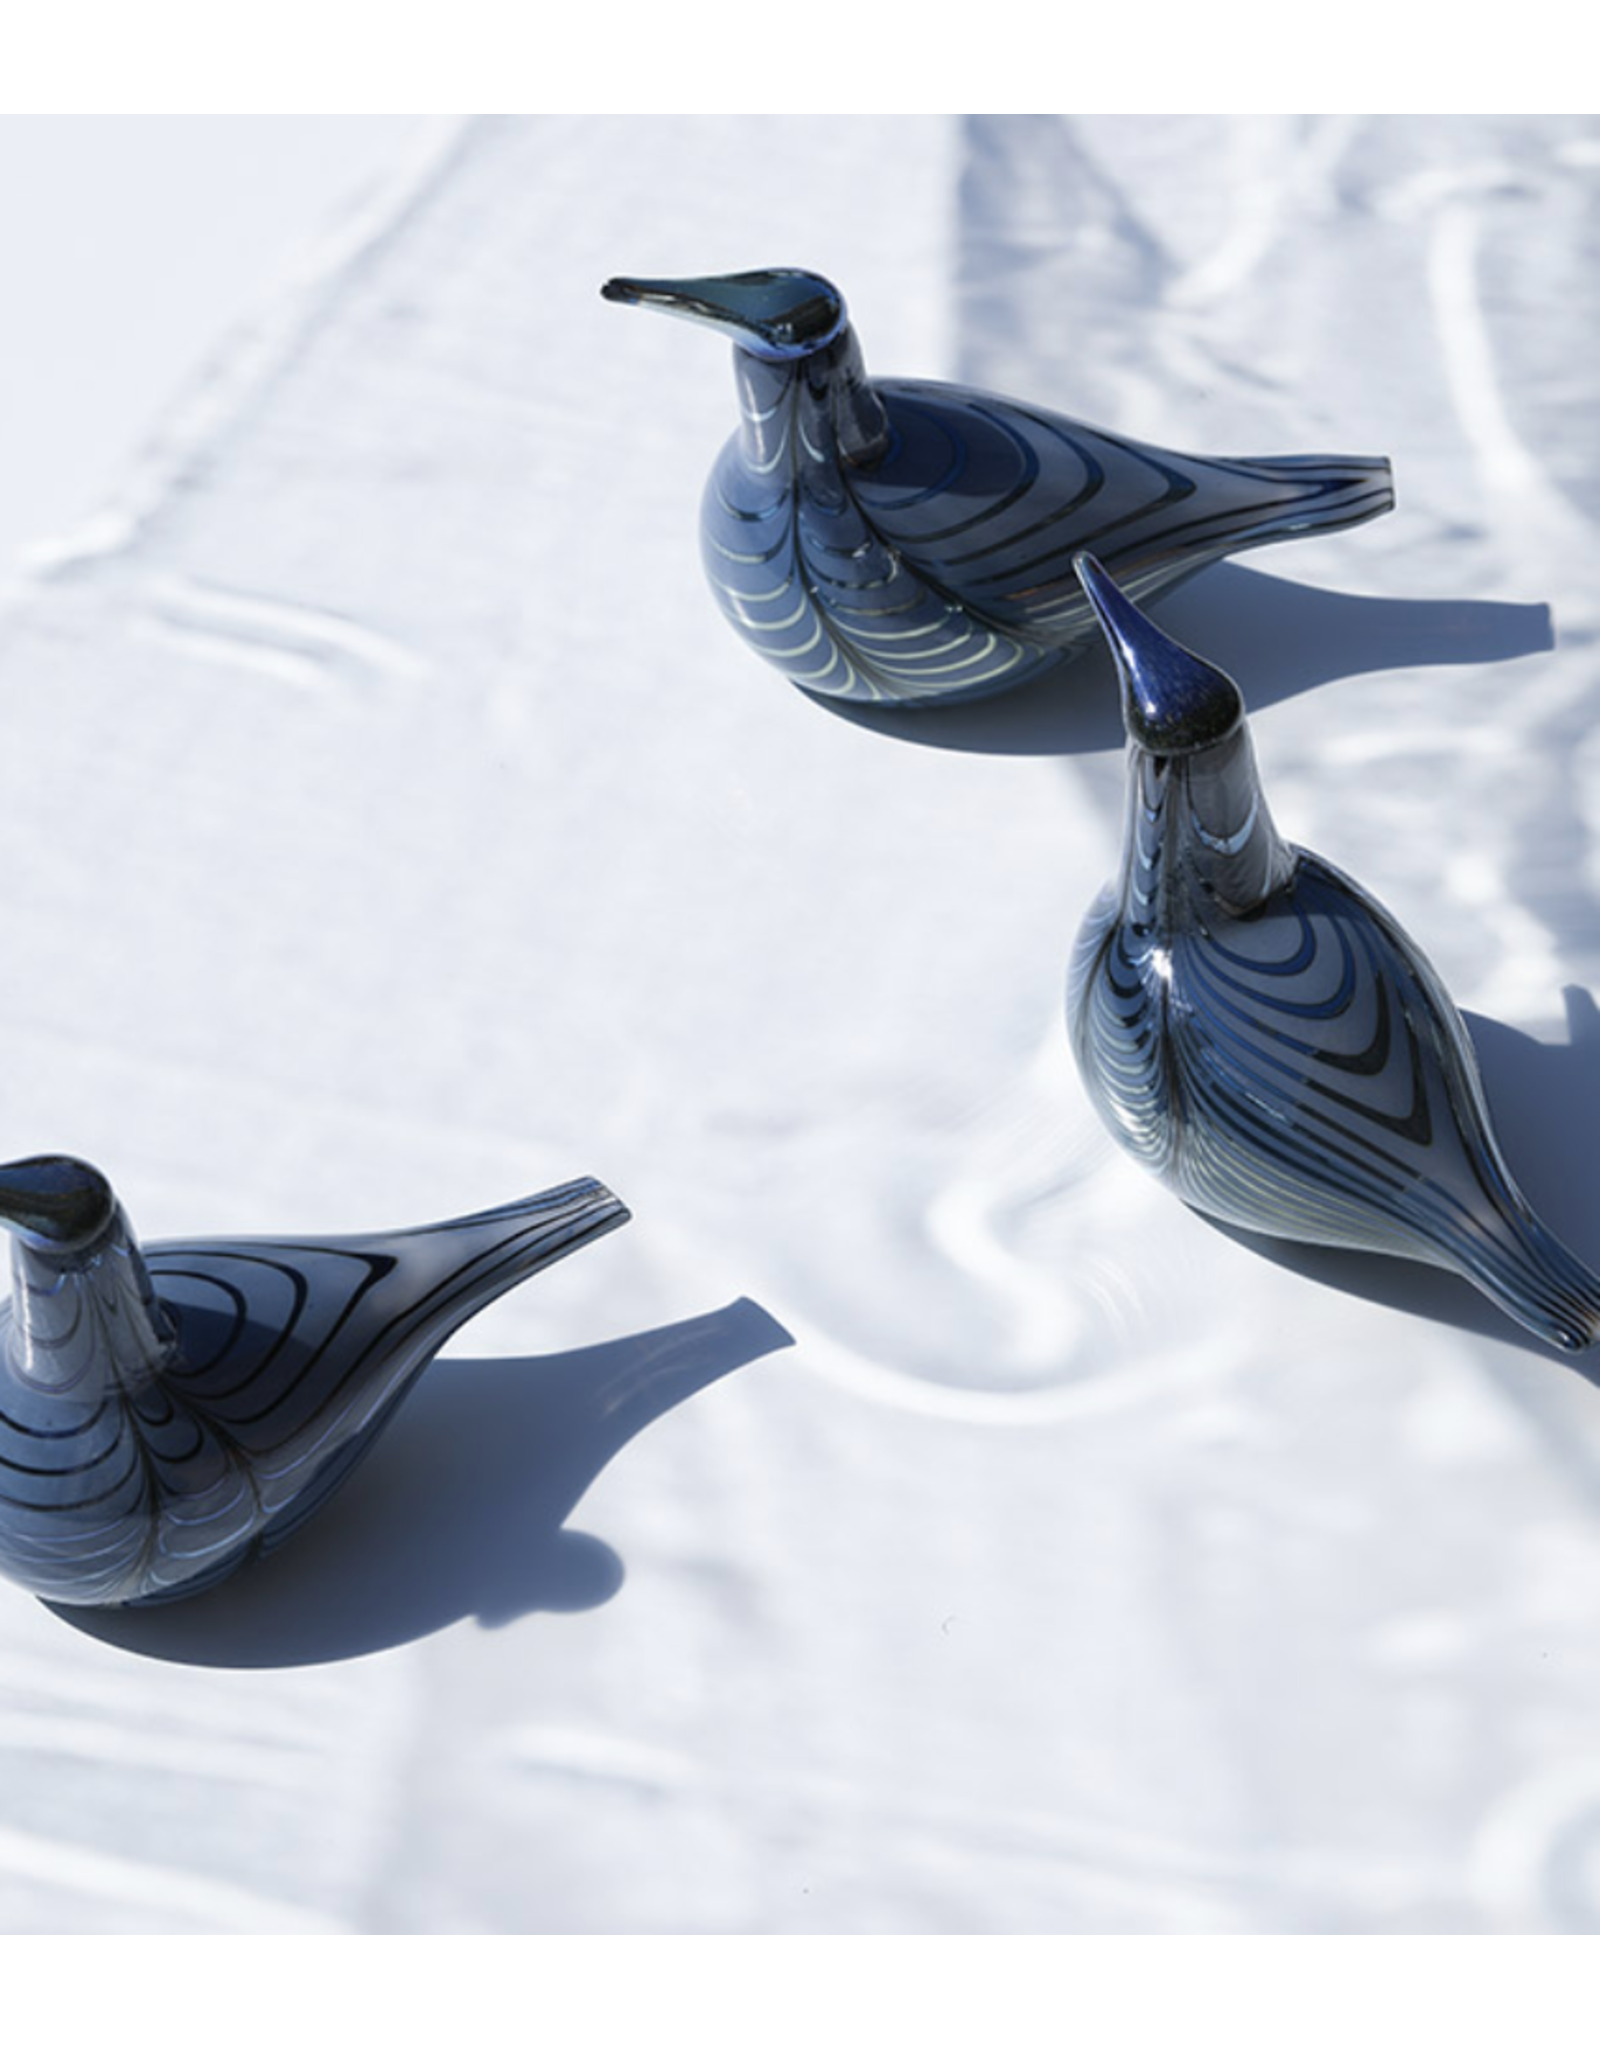 BIRDS BY TOIKKA 2019 VUONO ANNUAL BIRD